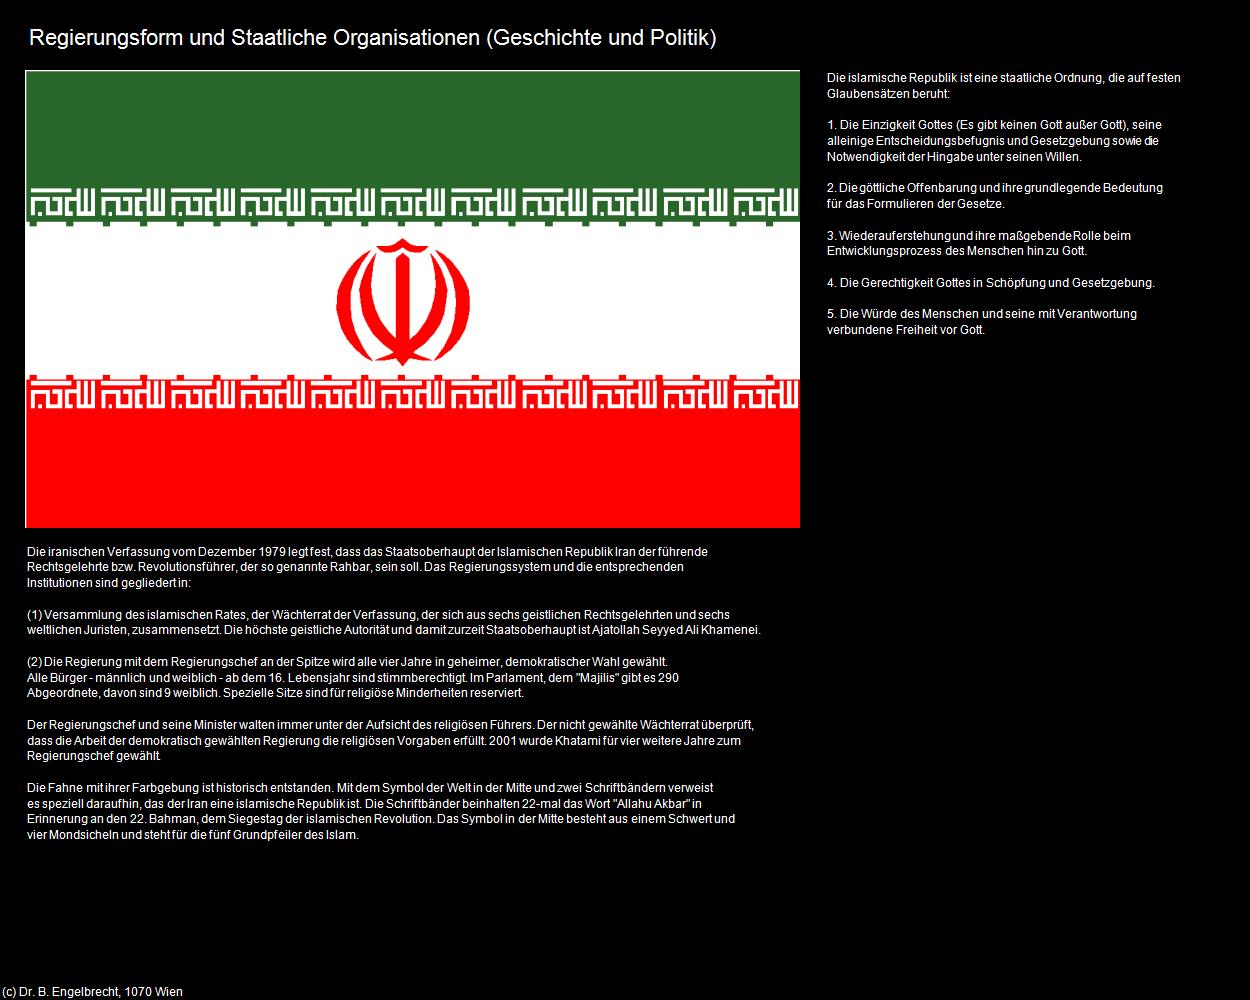 Regierungsform und Staatliche Organisationen (IRAN-Geschichte und Politik) in Iran